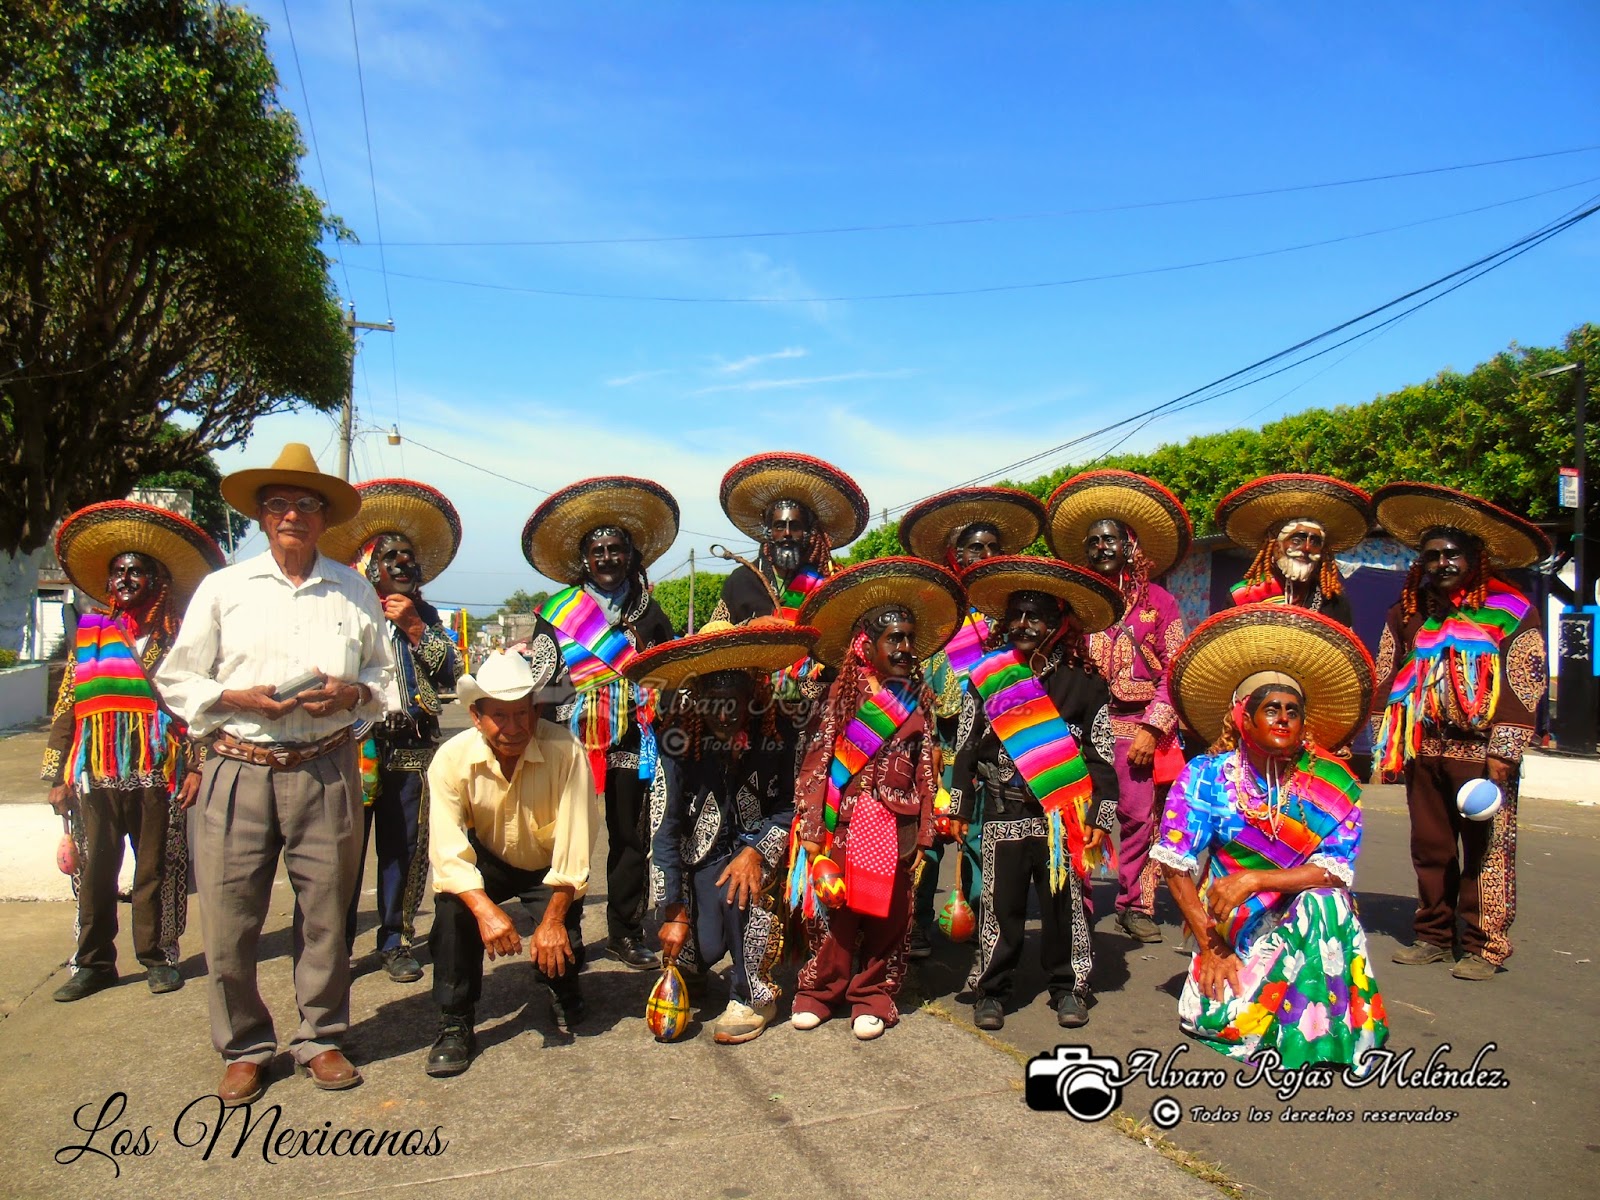 Baile los mexicanos expresión de alegría, necesidades y fe " El Palmar